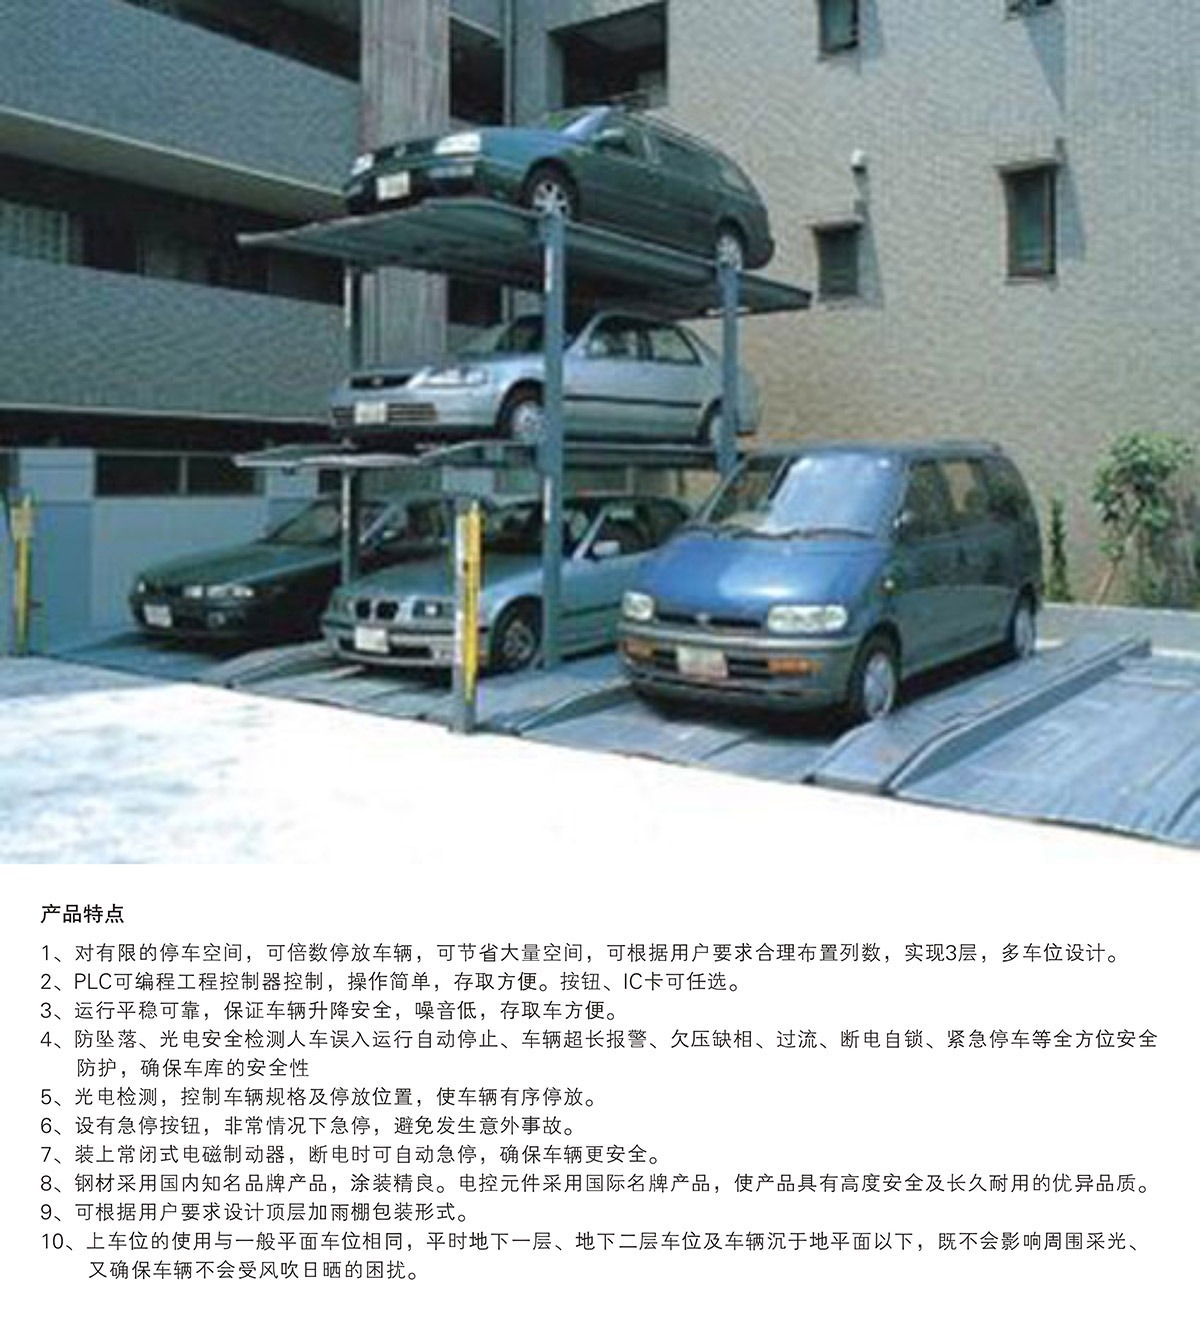 四川PJS3-D2三层地坑简易升降立体车库产品特点.jpg